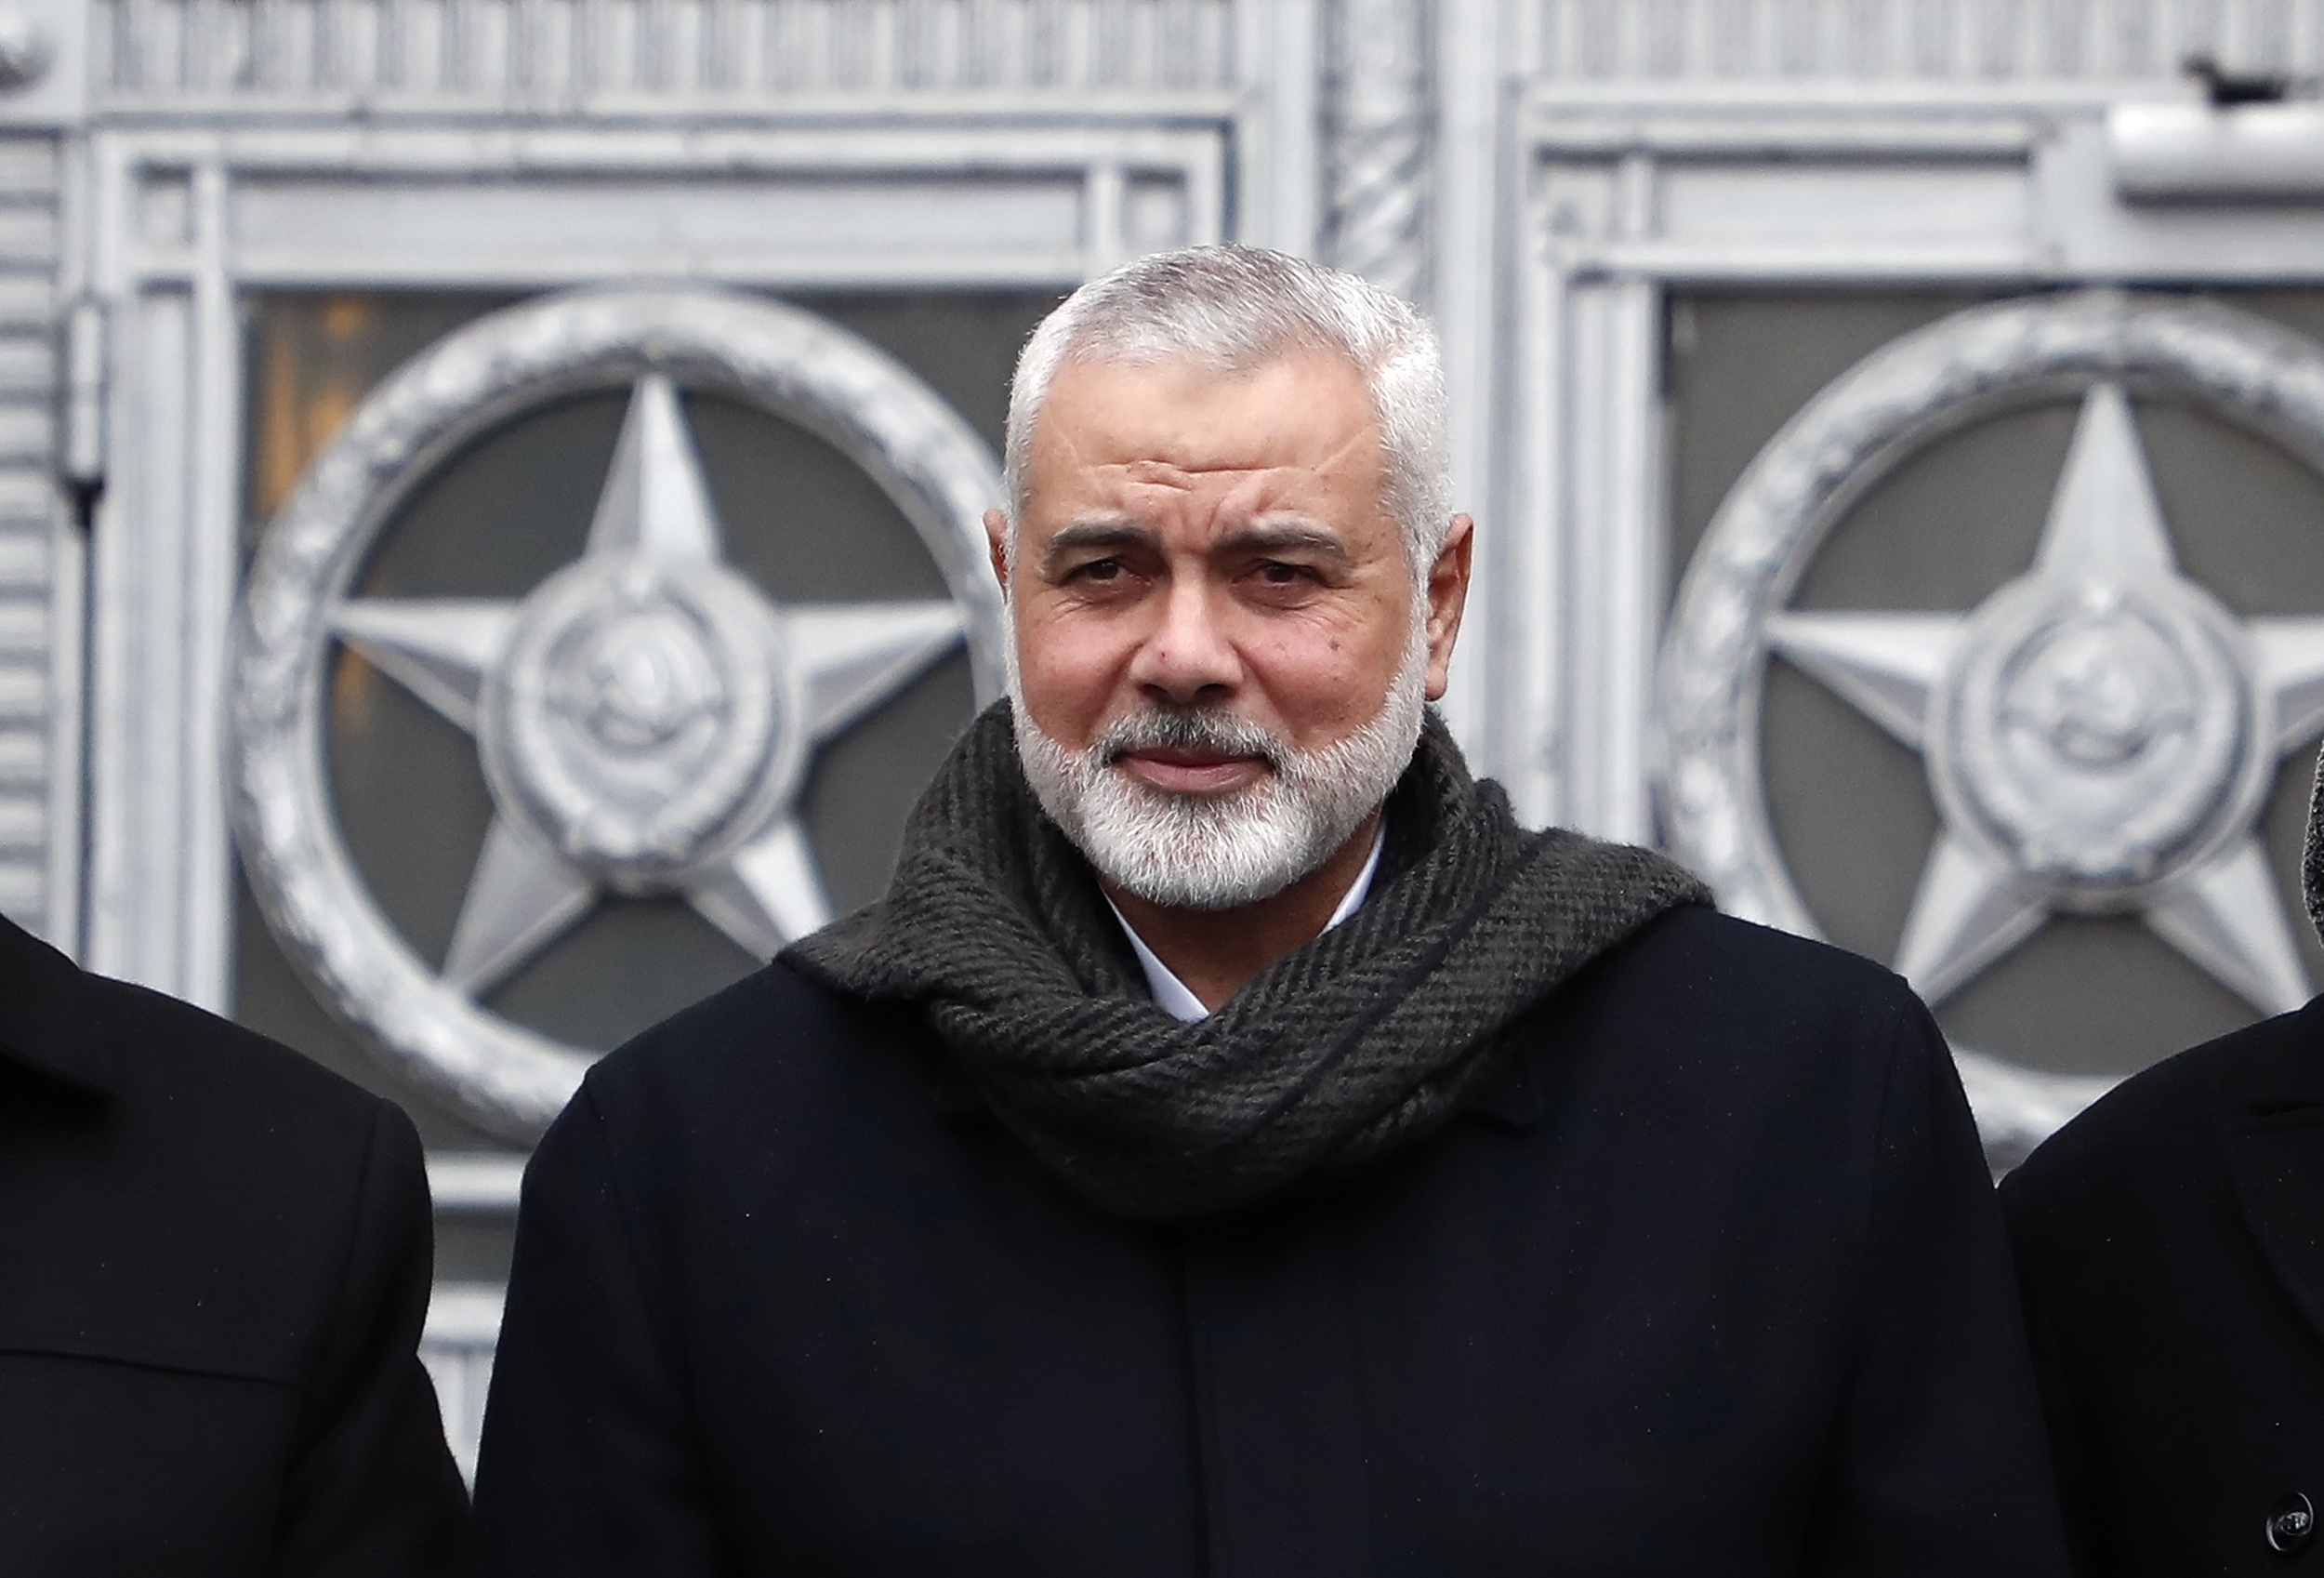 El líder del movimiento islamista palestino Hamás, Ismail Haniye. EFE/EPA/MAXIM SHIPENKOV/Archivo
